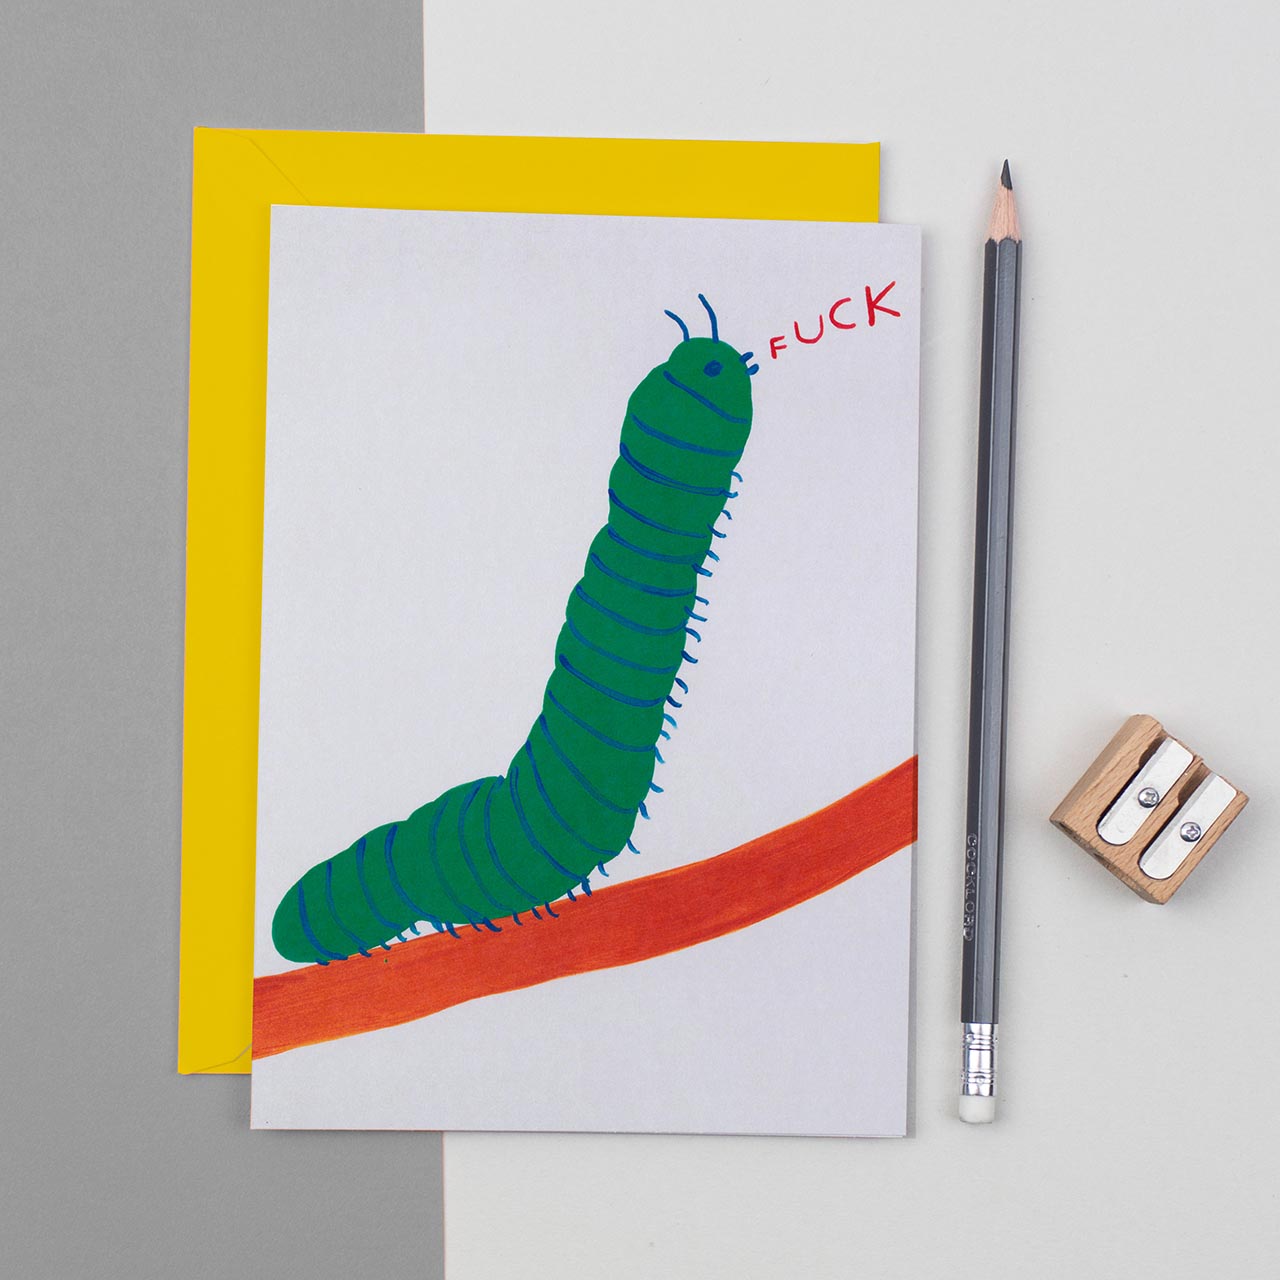 Caterpillar Fuck Greeting Card